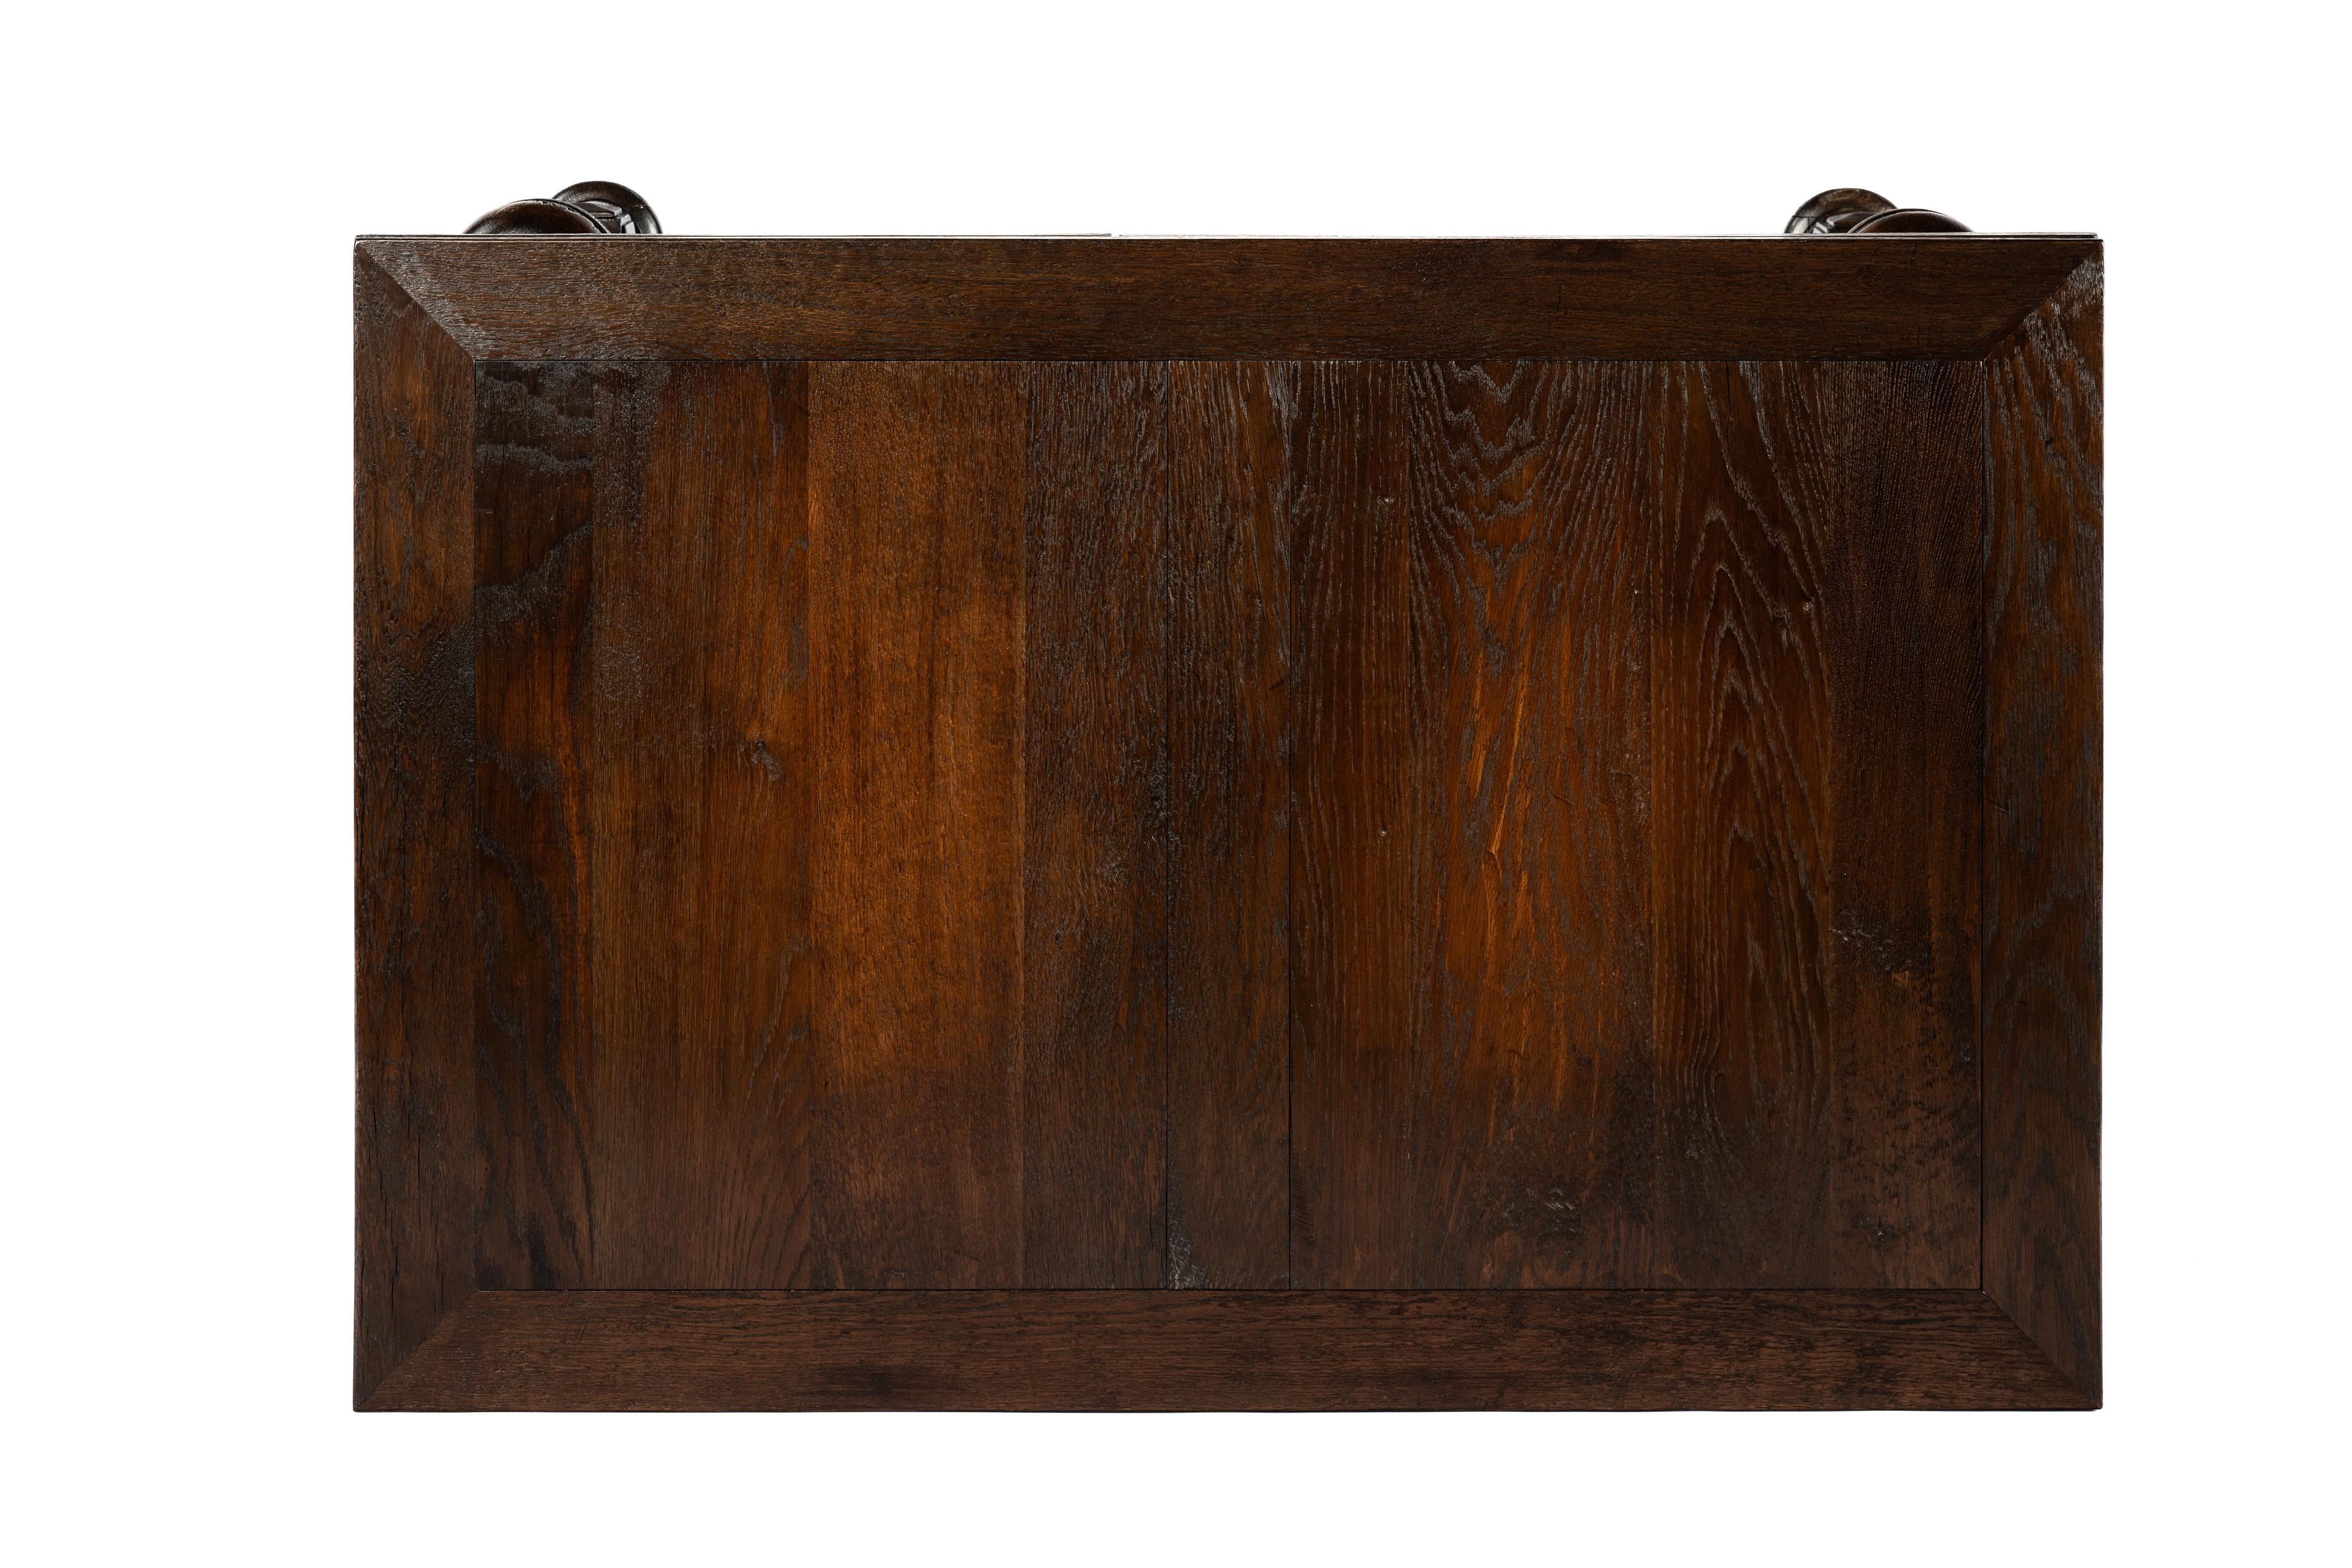 Antique 20th-century  oak  warm brown Dutch Renaissance Extension leaf table For Sale 2